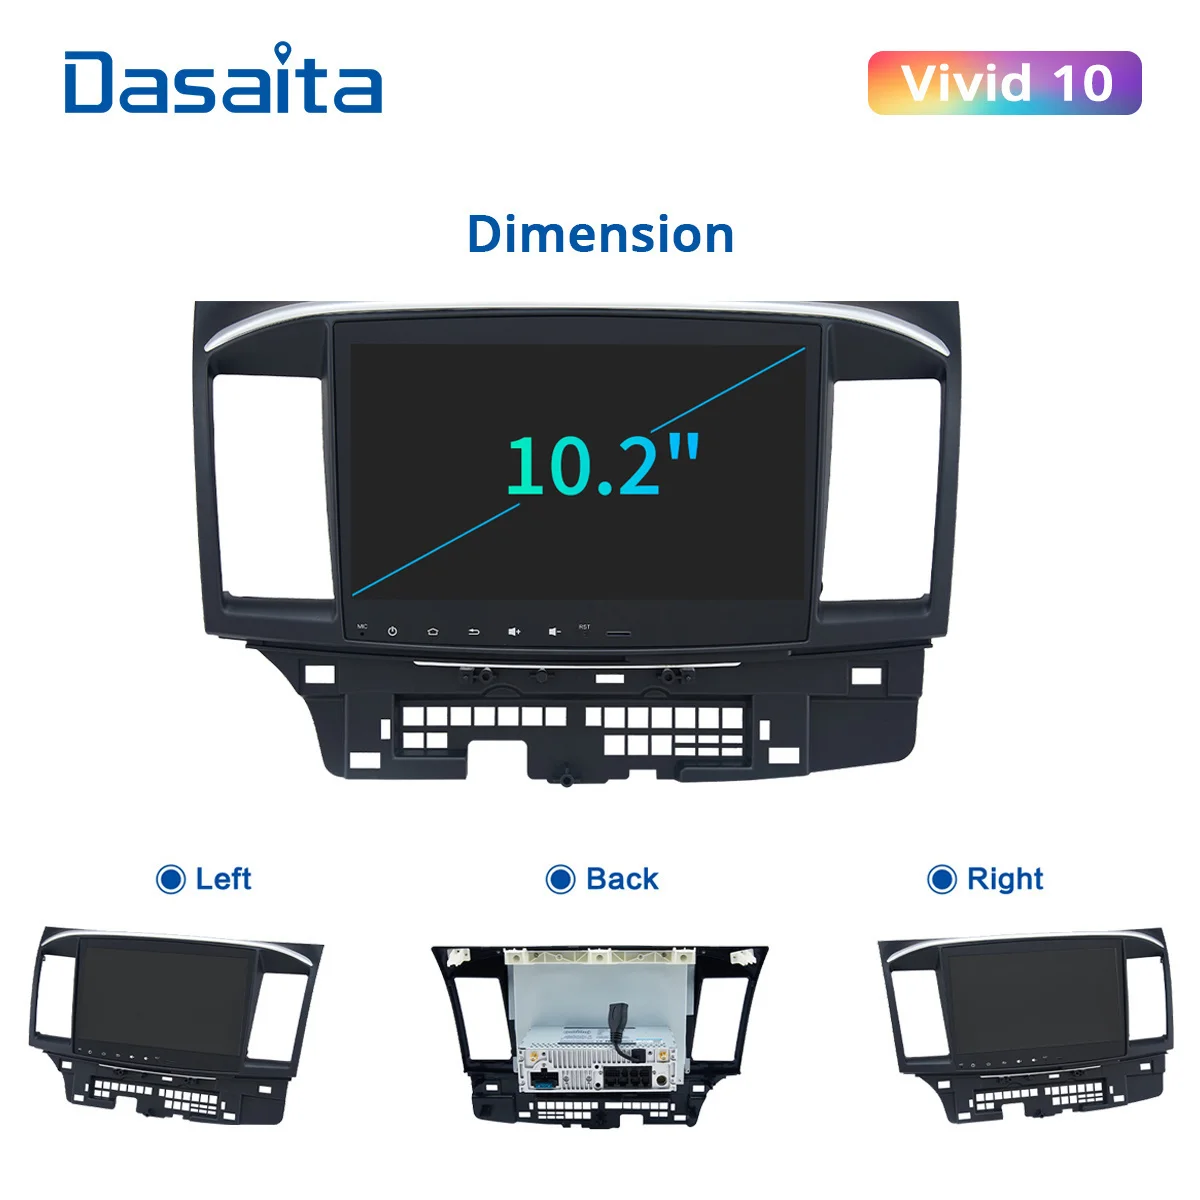 Dasaita Auto Raadio Mitsubishi Lancer EVO Sõiduki 2008 2009 2010 2011 2014 2015 2016 2017 Carplay Android Stereo GPS Navi tk